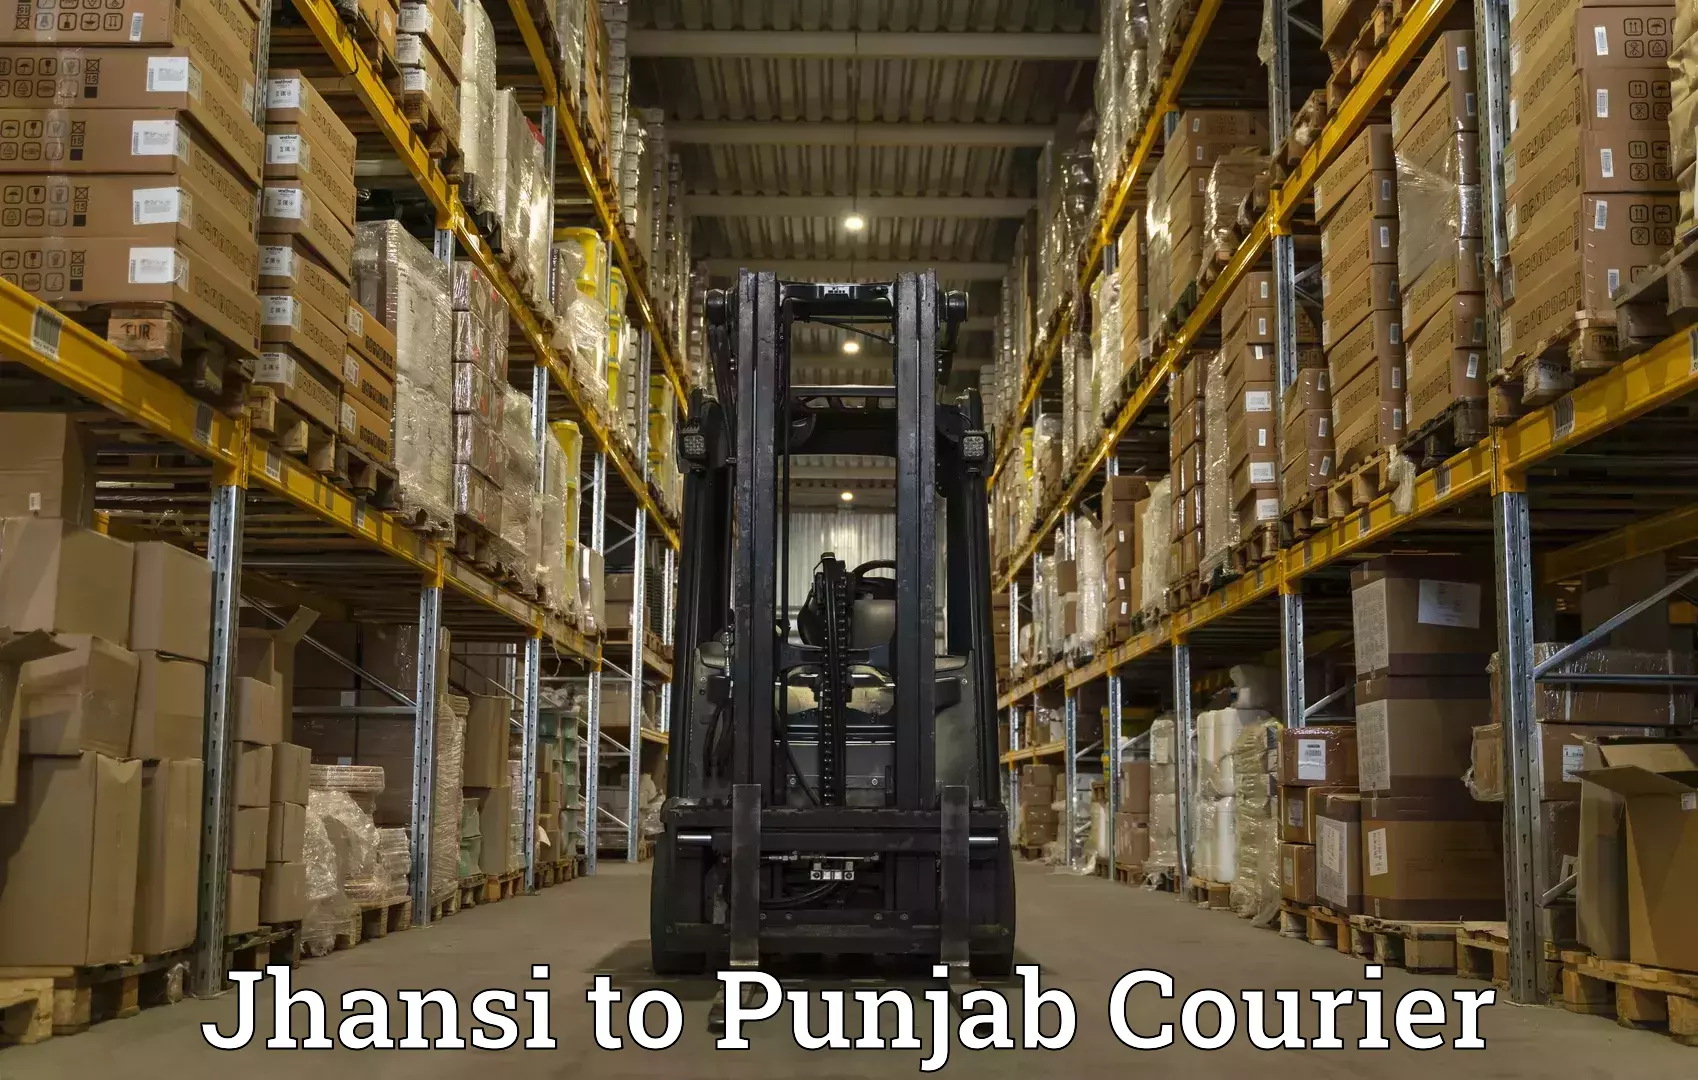 Global shipping networks Jhansi to Amritsar